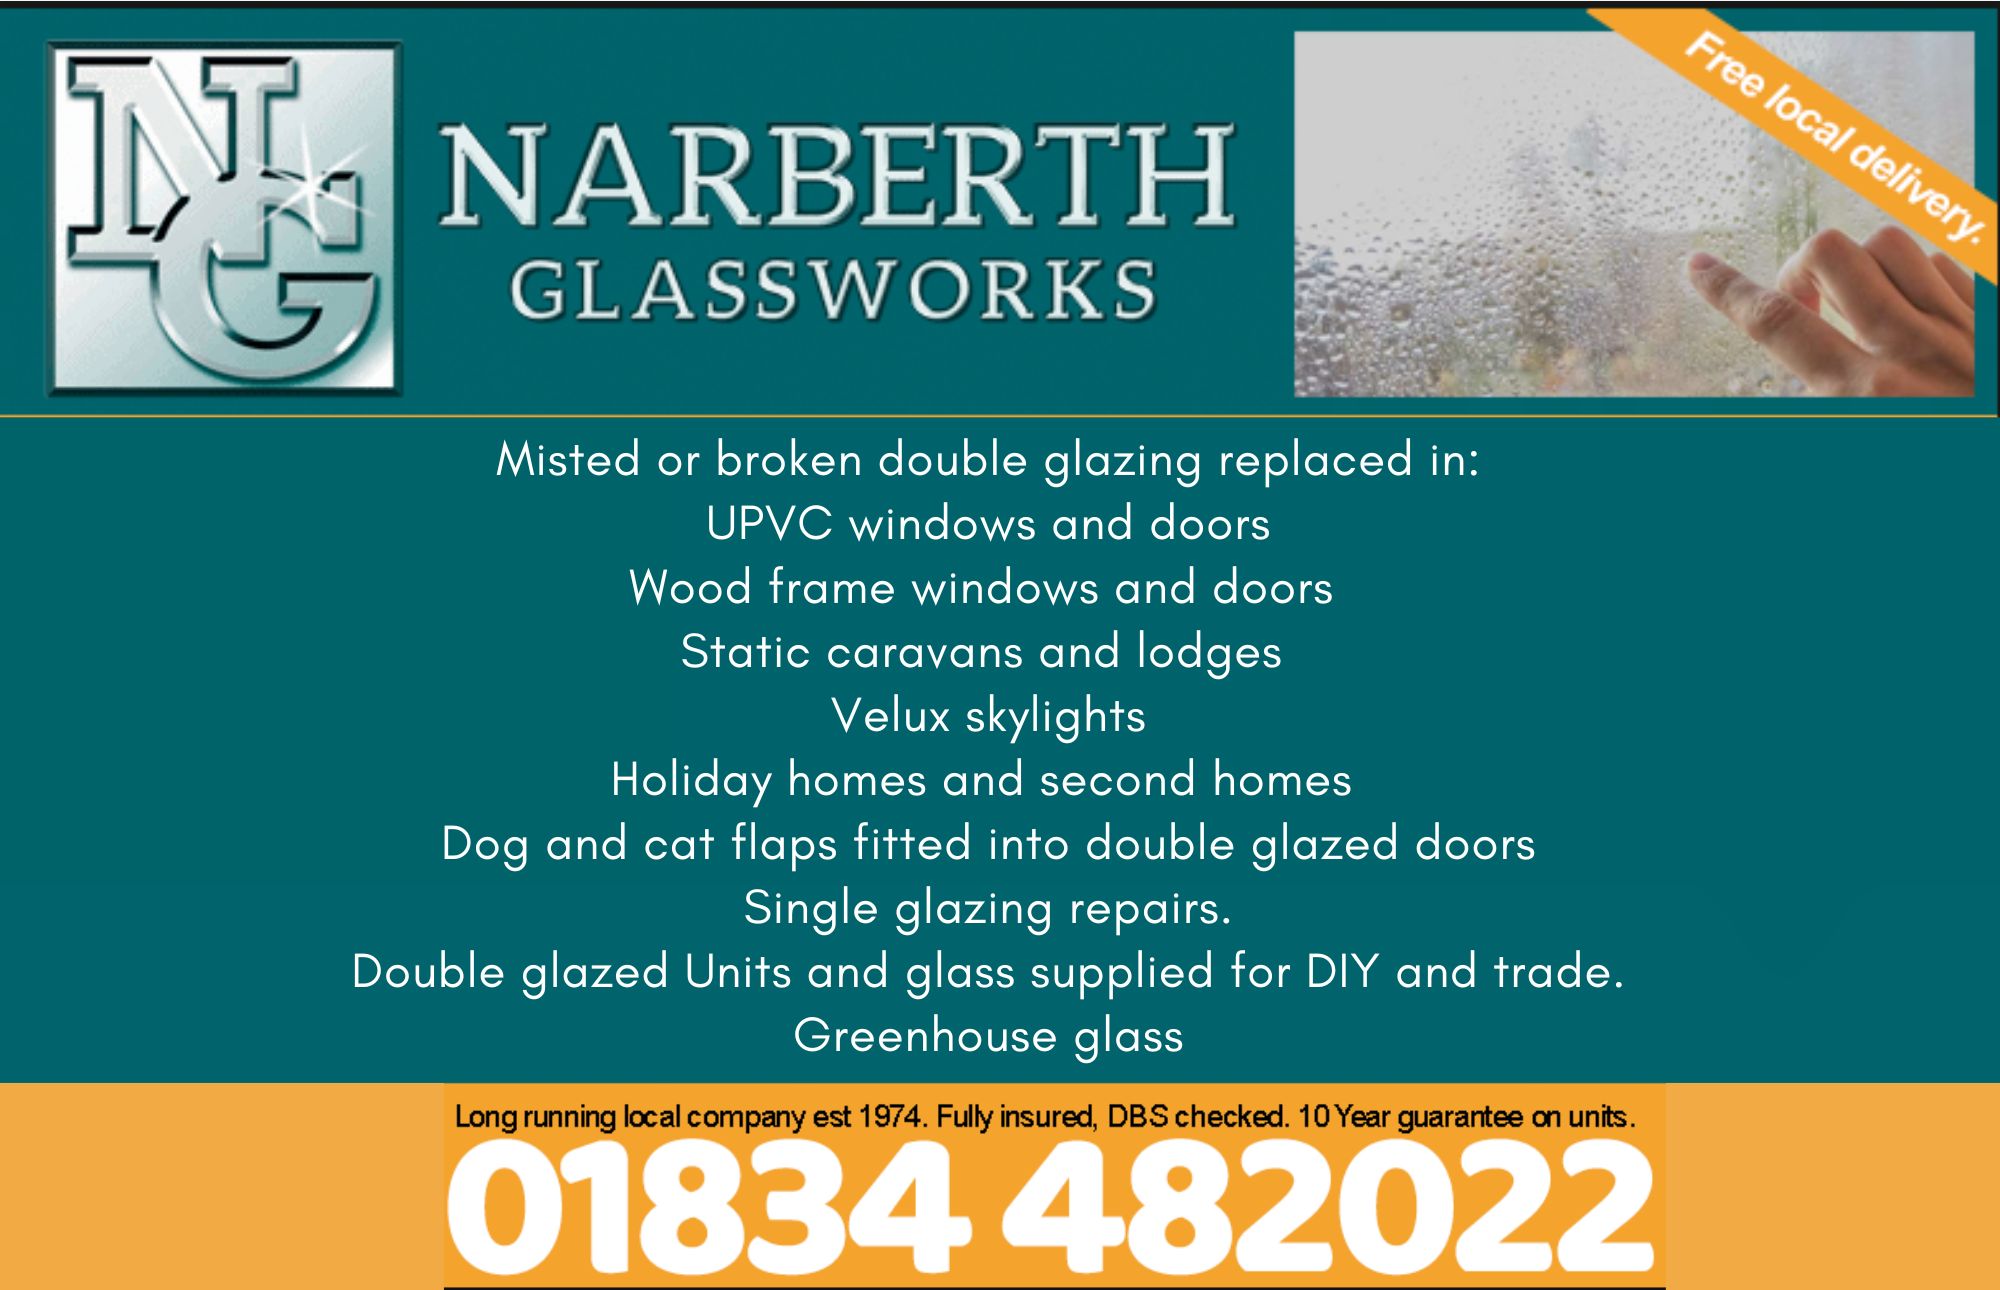 Narberth Glassworks